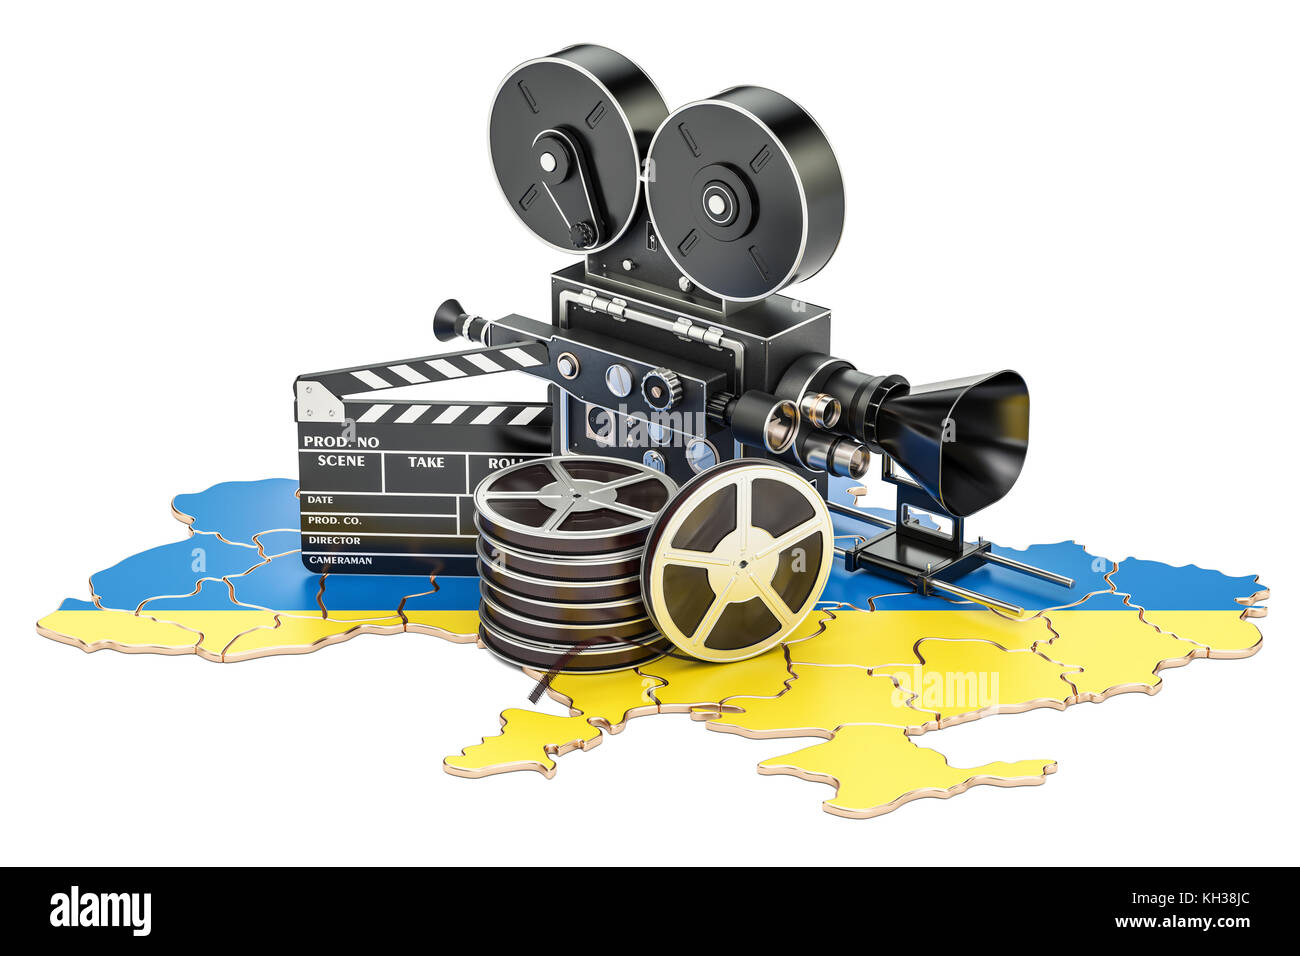 Ukrainische Kinematographie, Filmindustrie Konzept. 3D-Rendering auf weißem Hintergrund Stockfoto